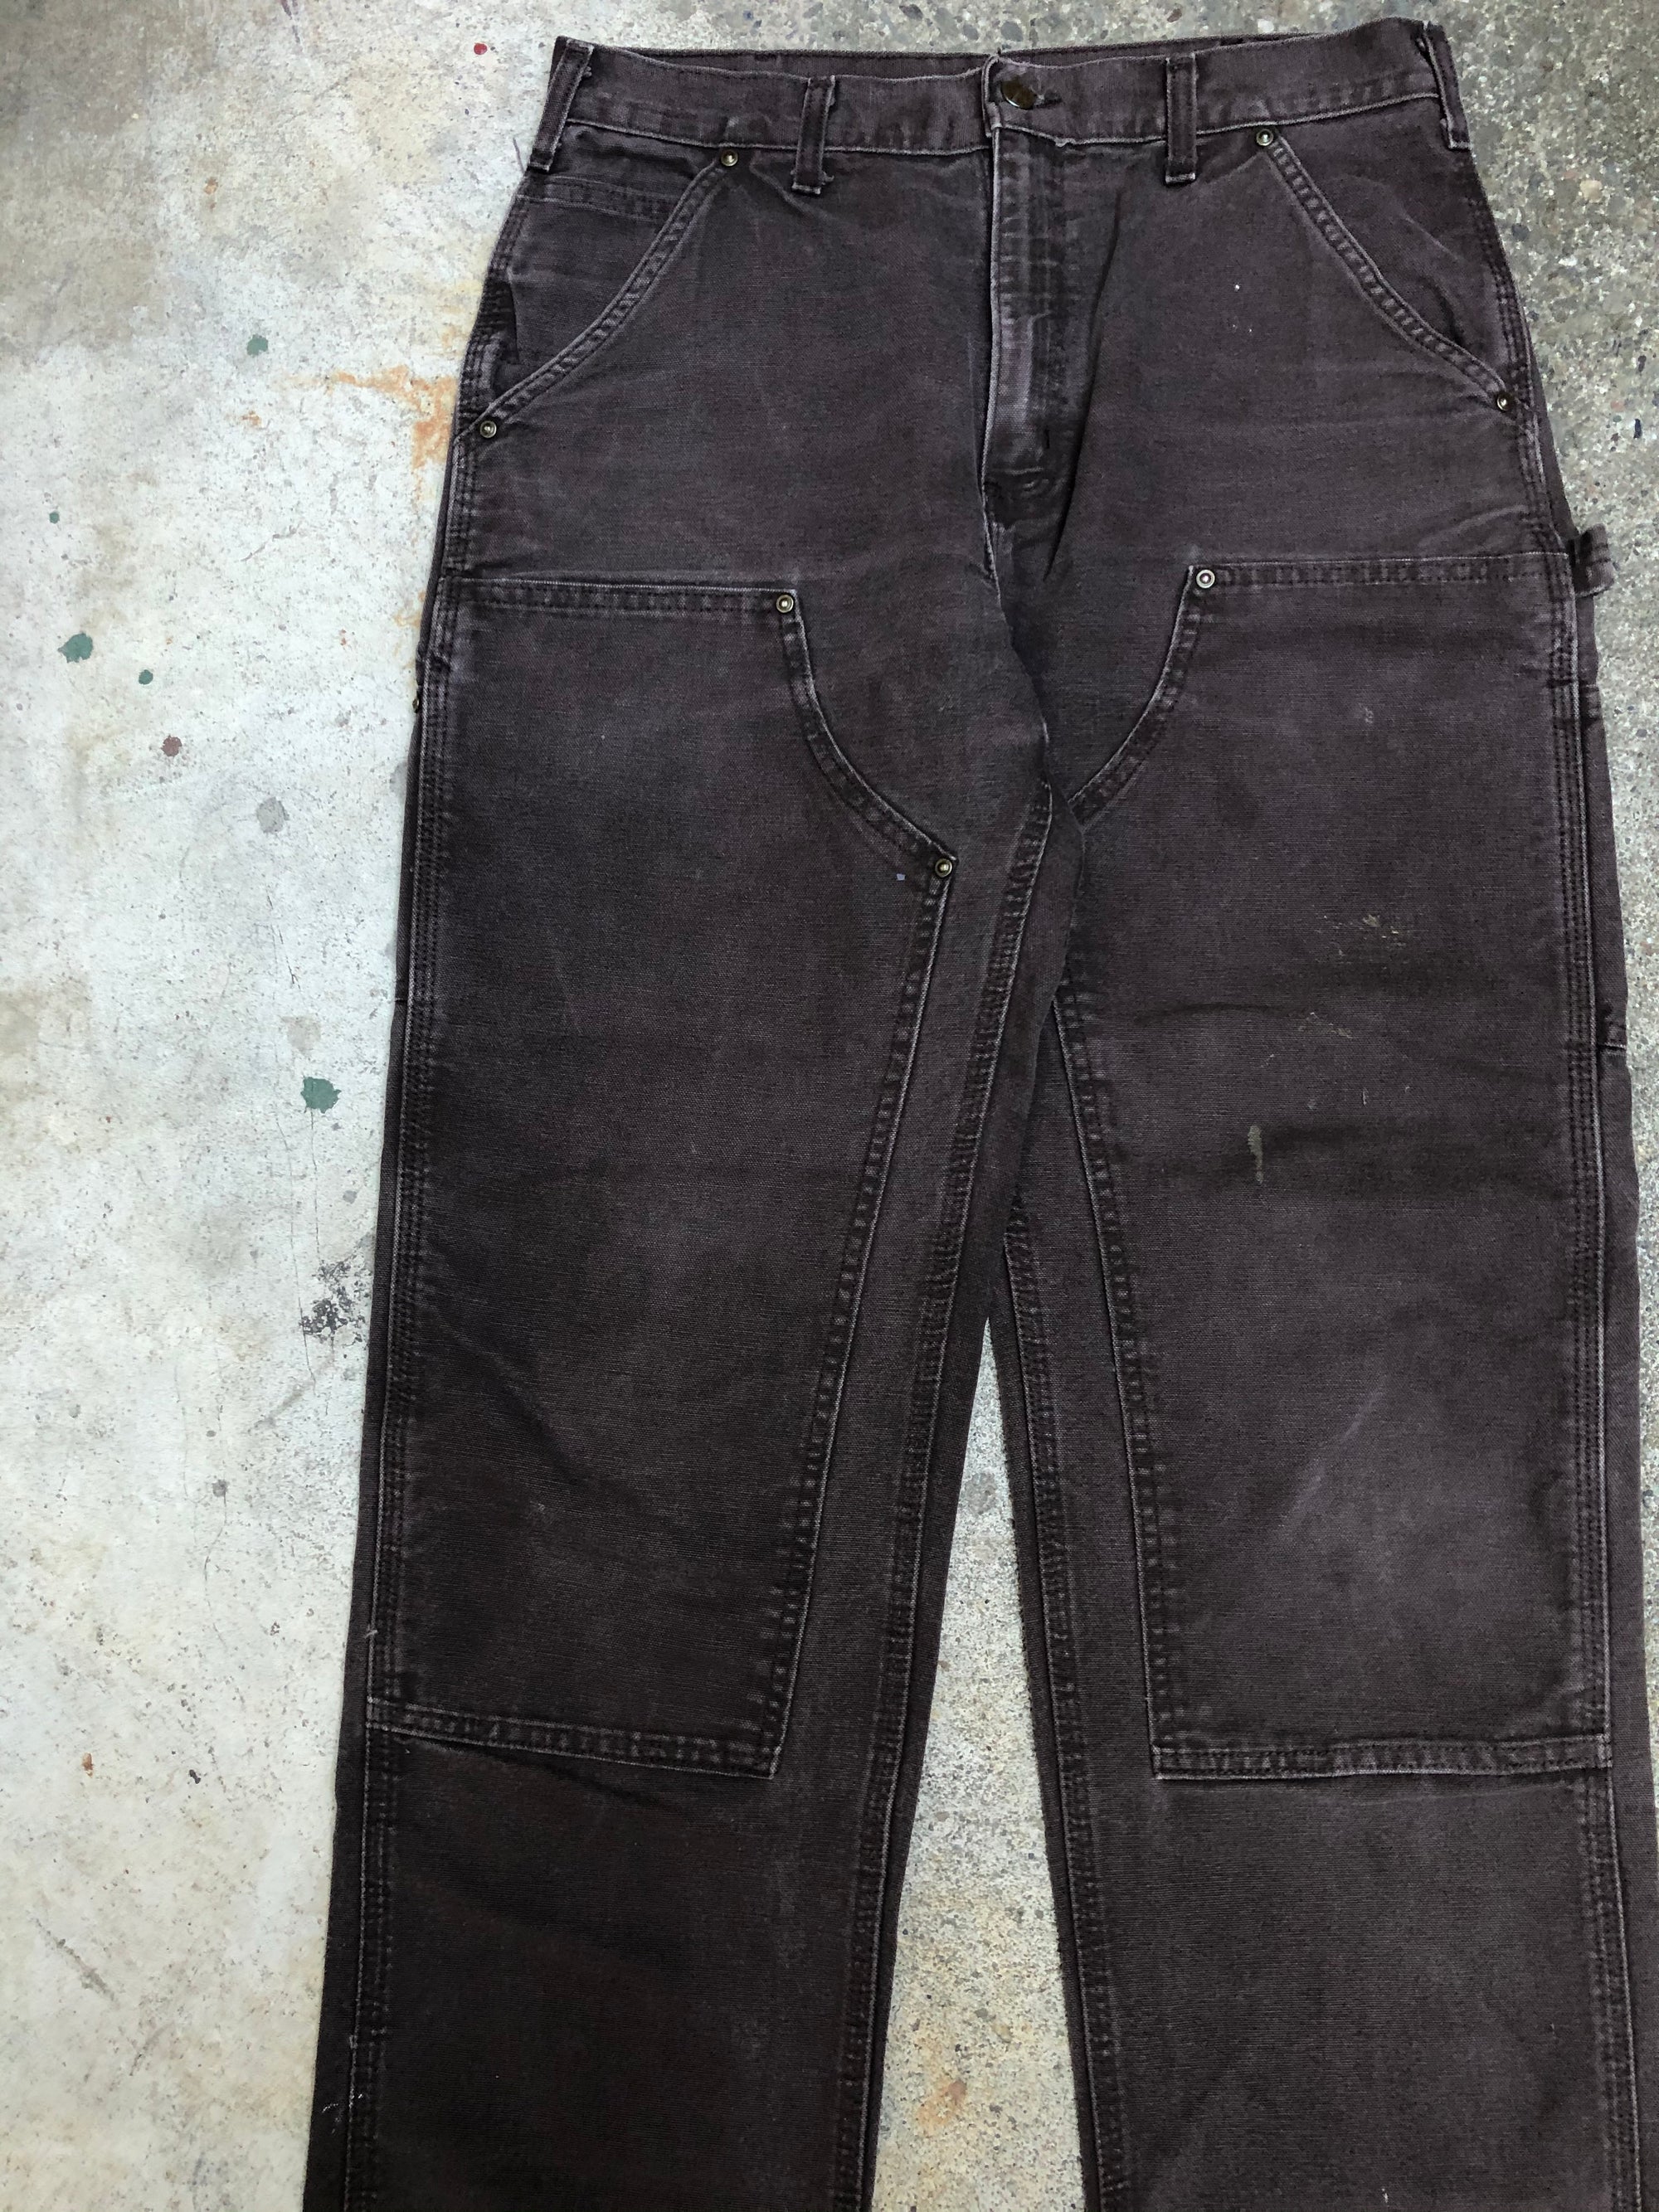 Carhartt B136 Dark Brown Double Front Knee Work Pants (32X31)